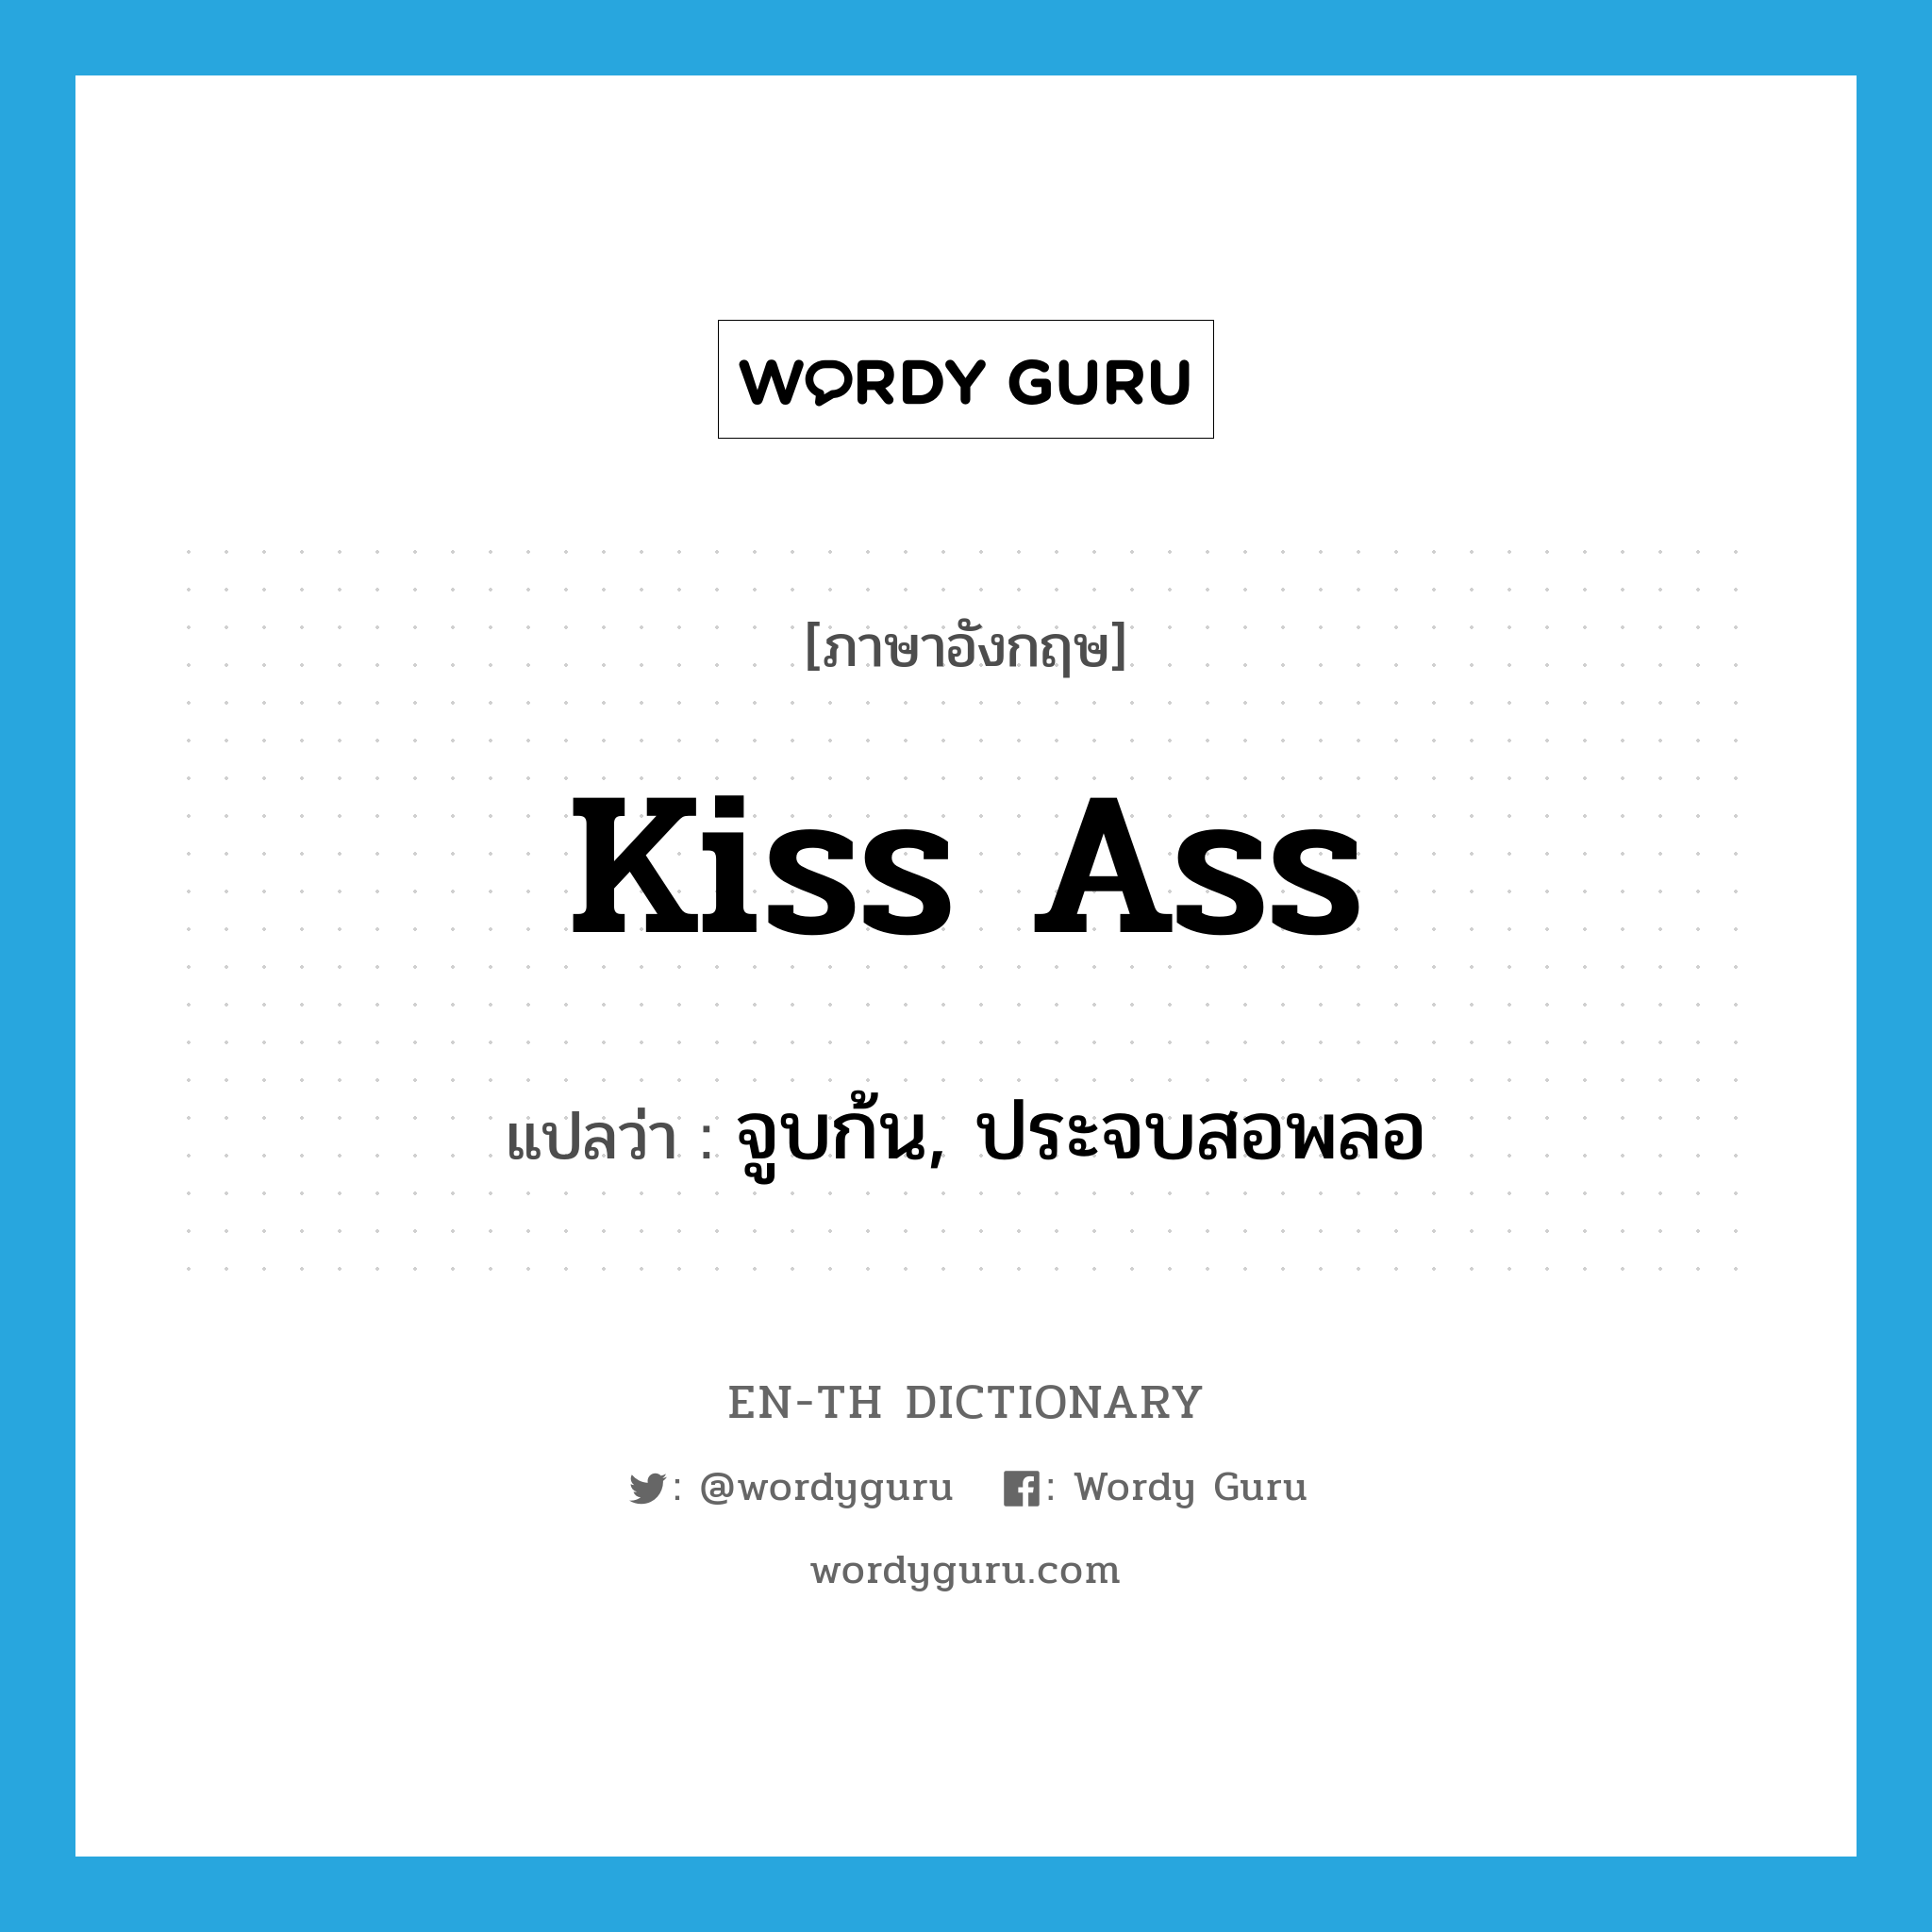 จูบก้น, ประจบสอพลอ ภาษาอังกฤษ?, คำศัพท์ภาษาอังกฤษ จูบก้น, ประจบสอพลอ แปลว่า kiss ass ประเภท SL หมวด SL